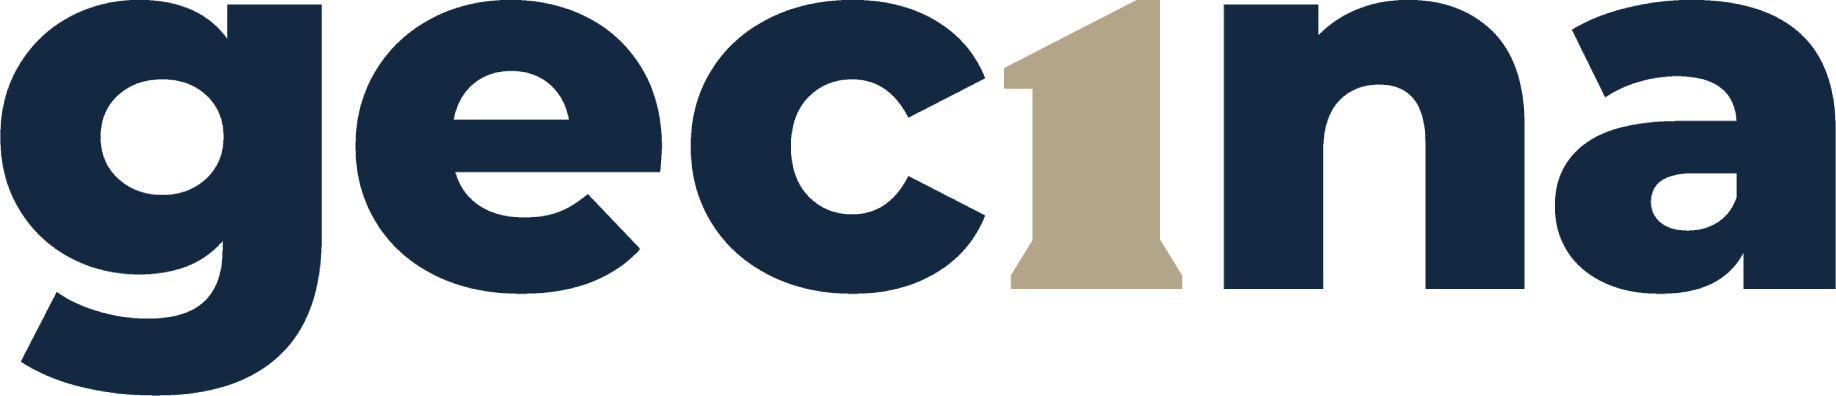 Gecina logo large (transparent PNG)